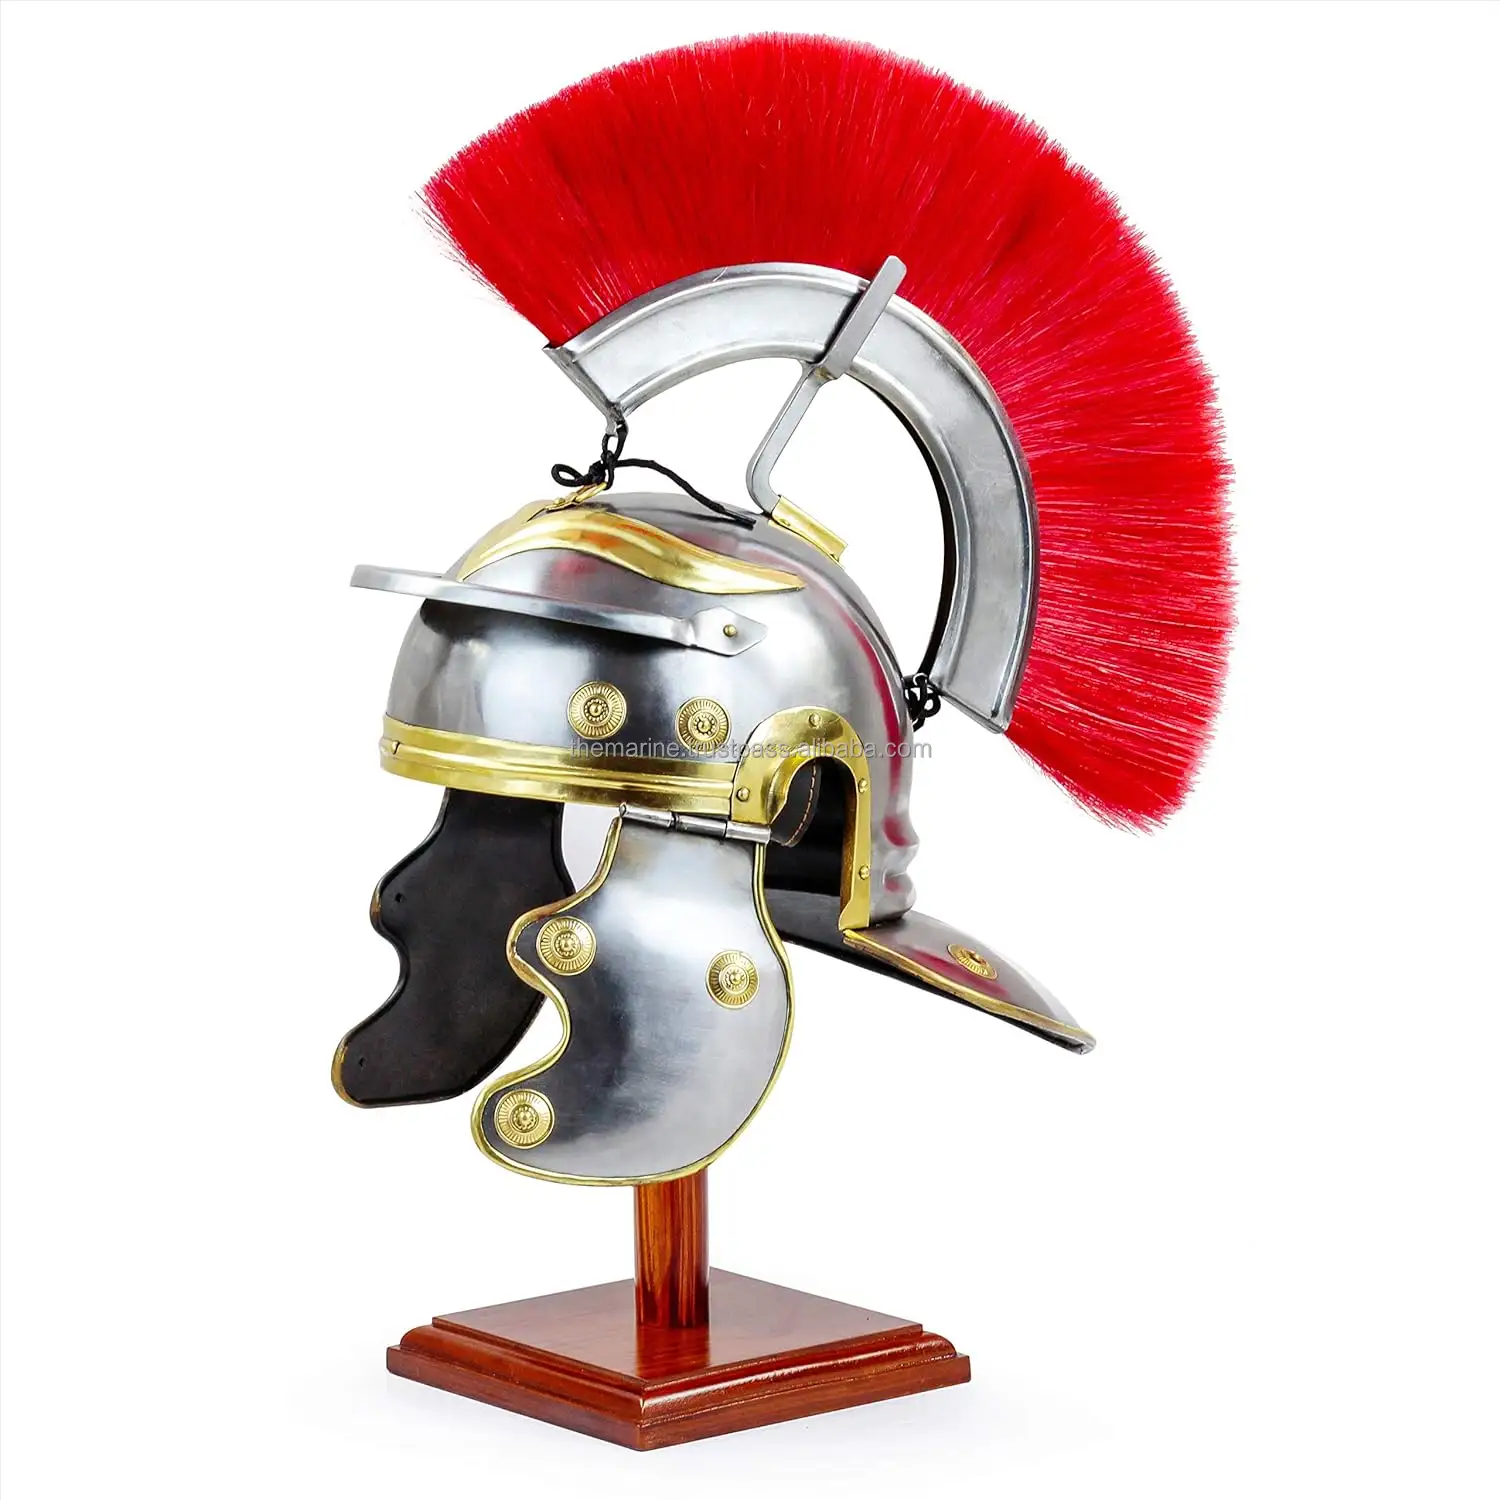 Красный герб средневекового века РИМСКИЙ ЦЕНТУРИОН галик-шлем для гладиаторов воинов и ларперов с деревянной подставкой.